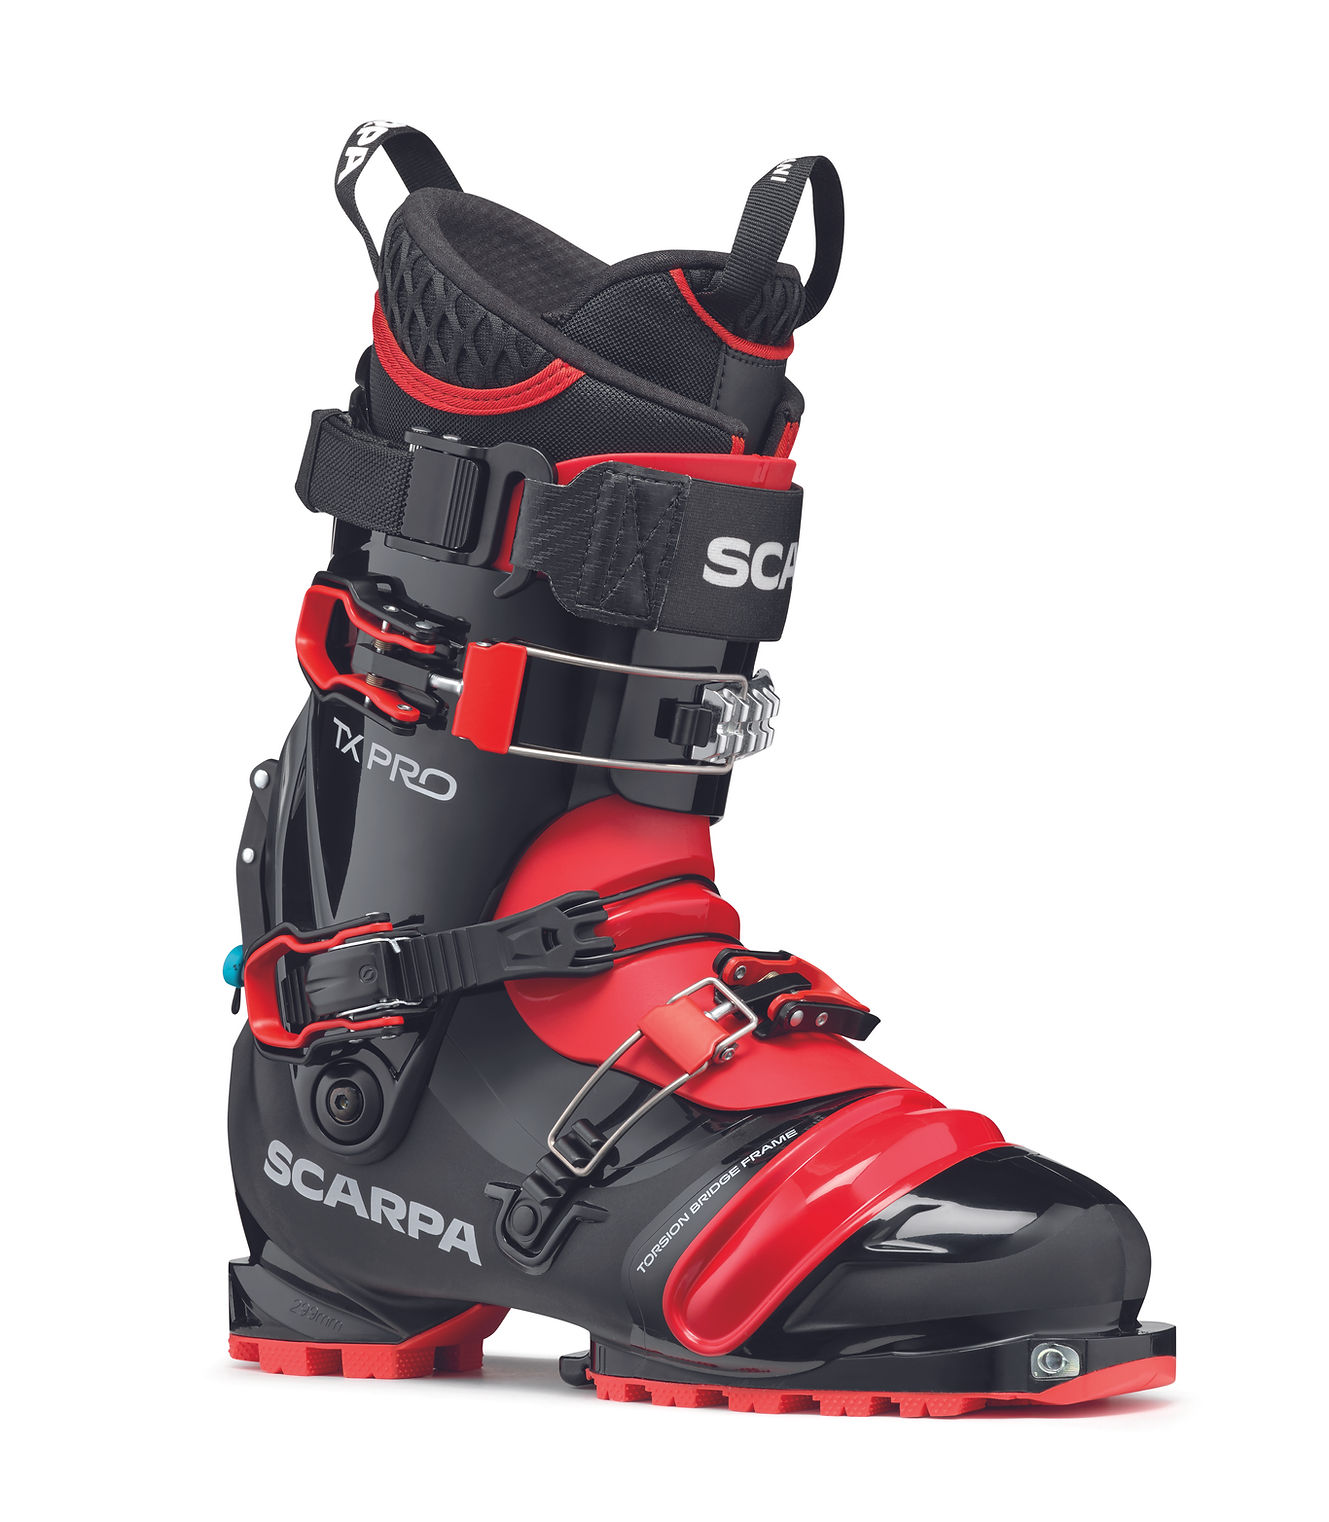 Botas de esquí Telemark, compra en nuestra tienda online - Snowleader